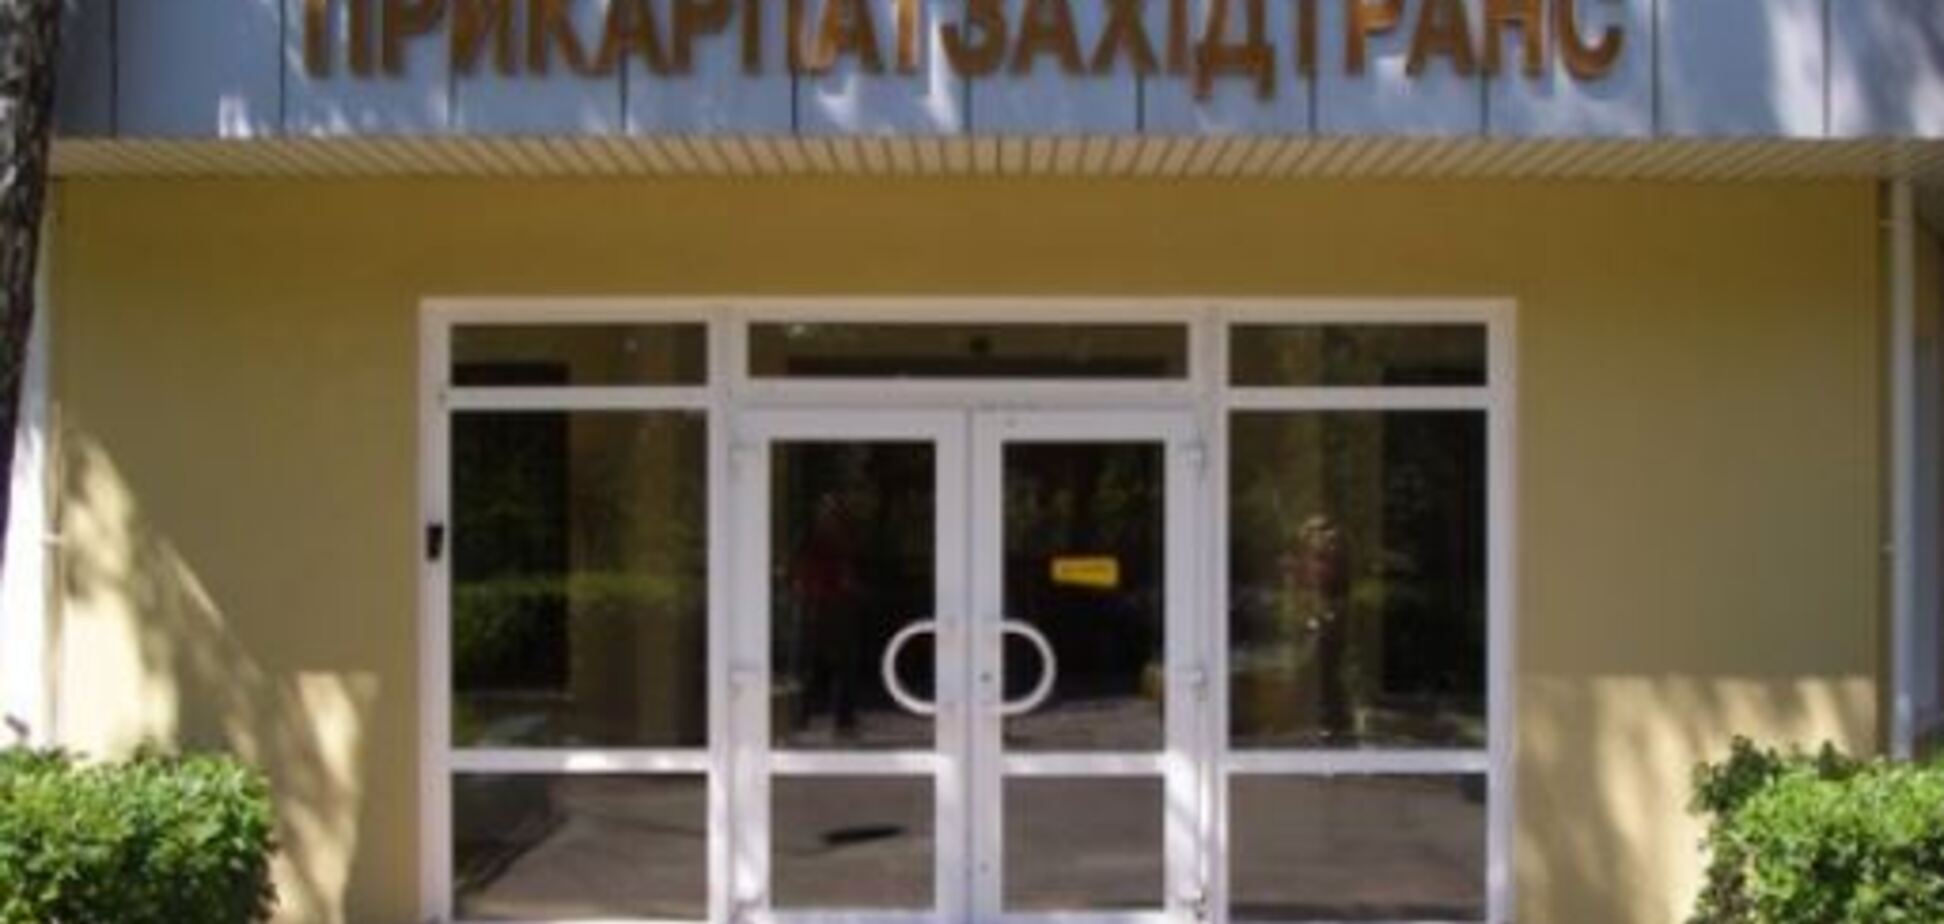 'ПрикарпатЗападтранс' просит украинские власти вмешаться в блокирование работы компании